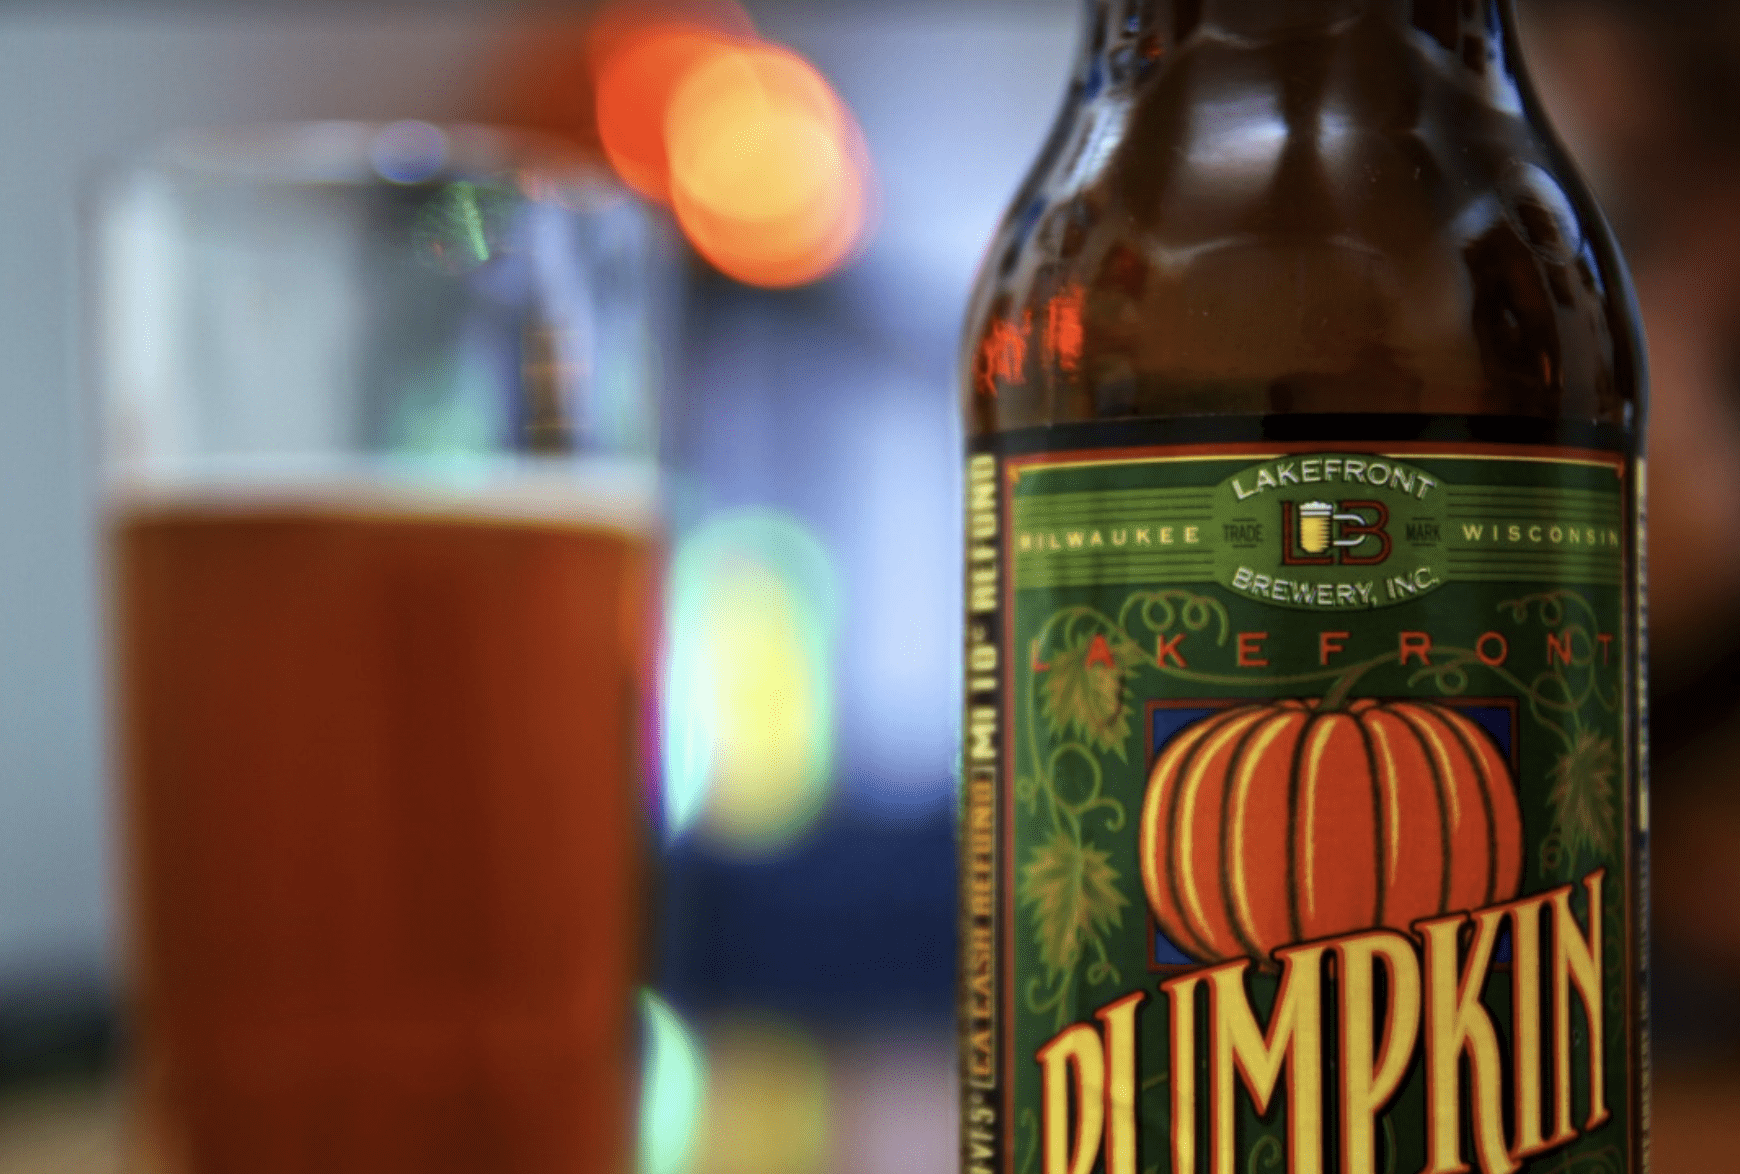 Pumpkin beer